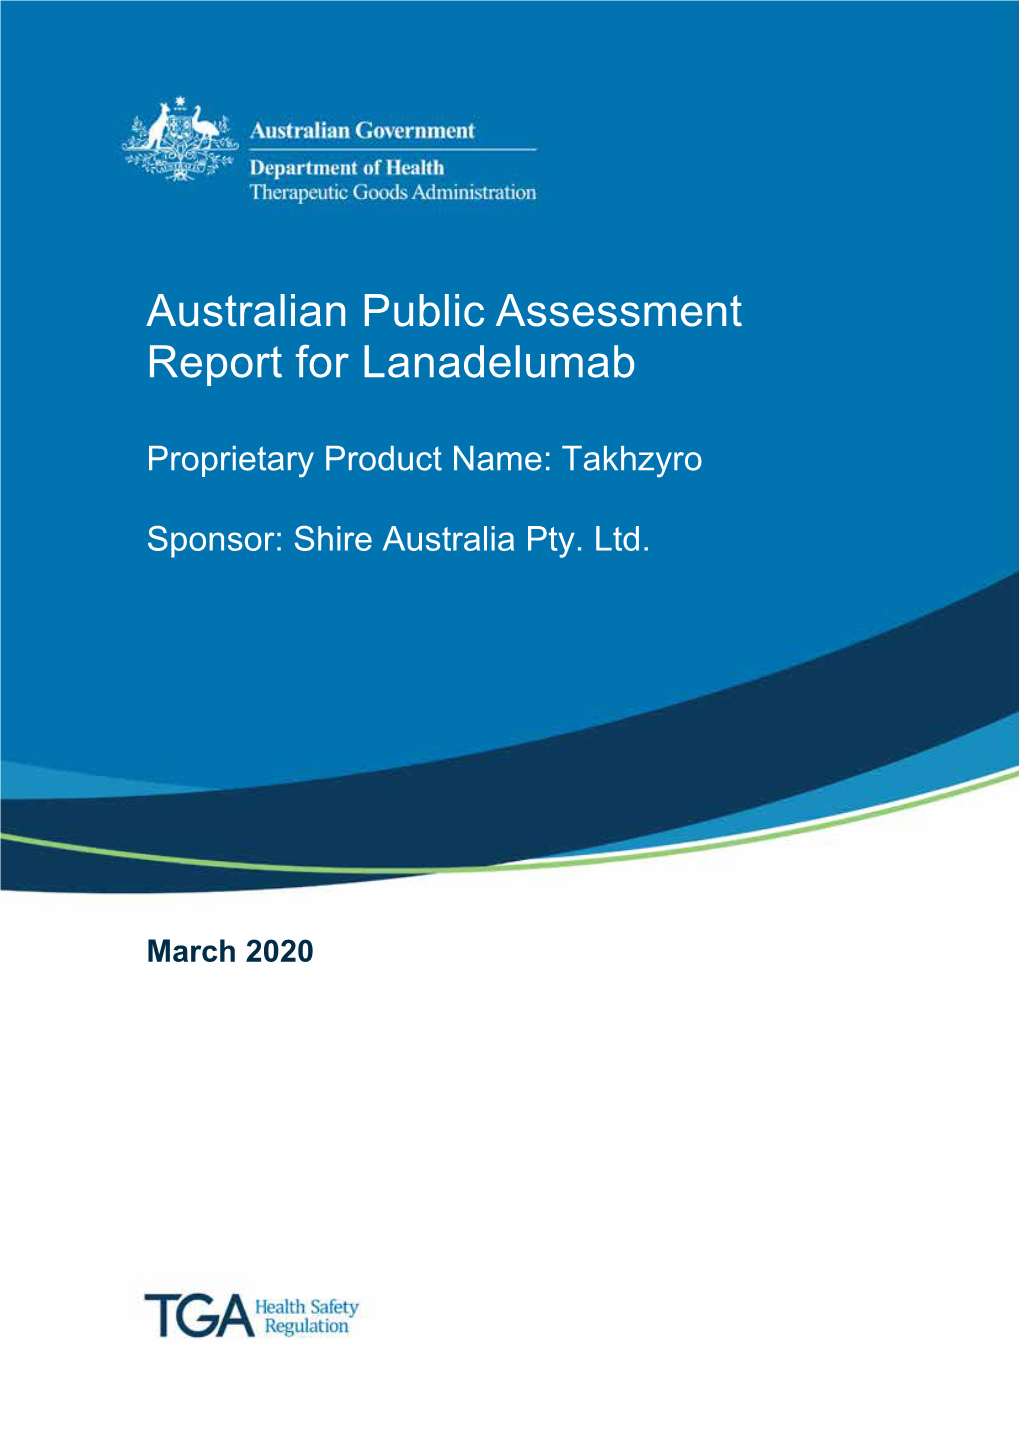 Australian Public Assessment Report for Lanadelumab